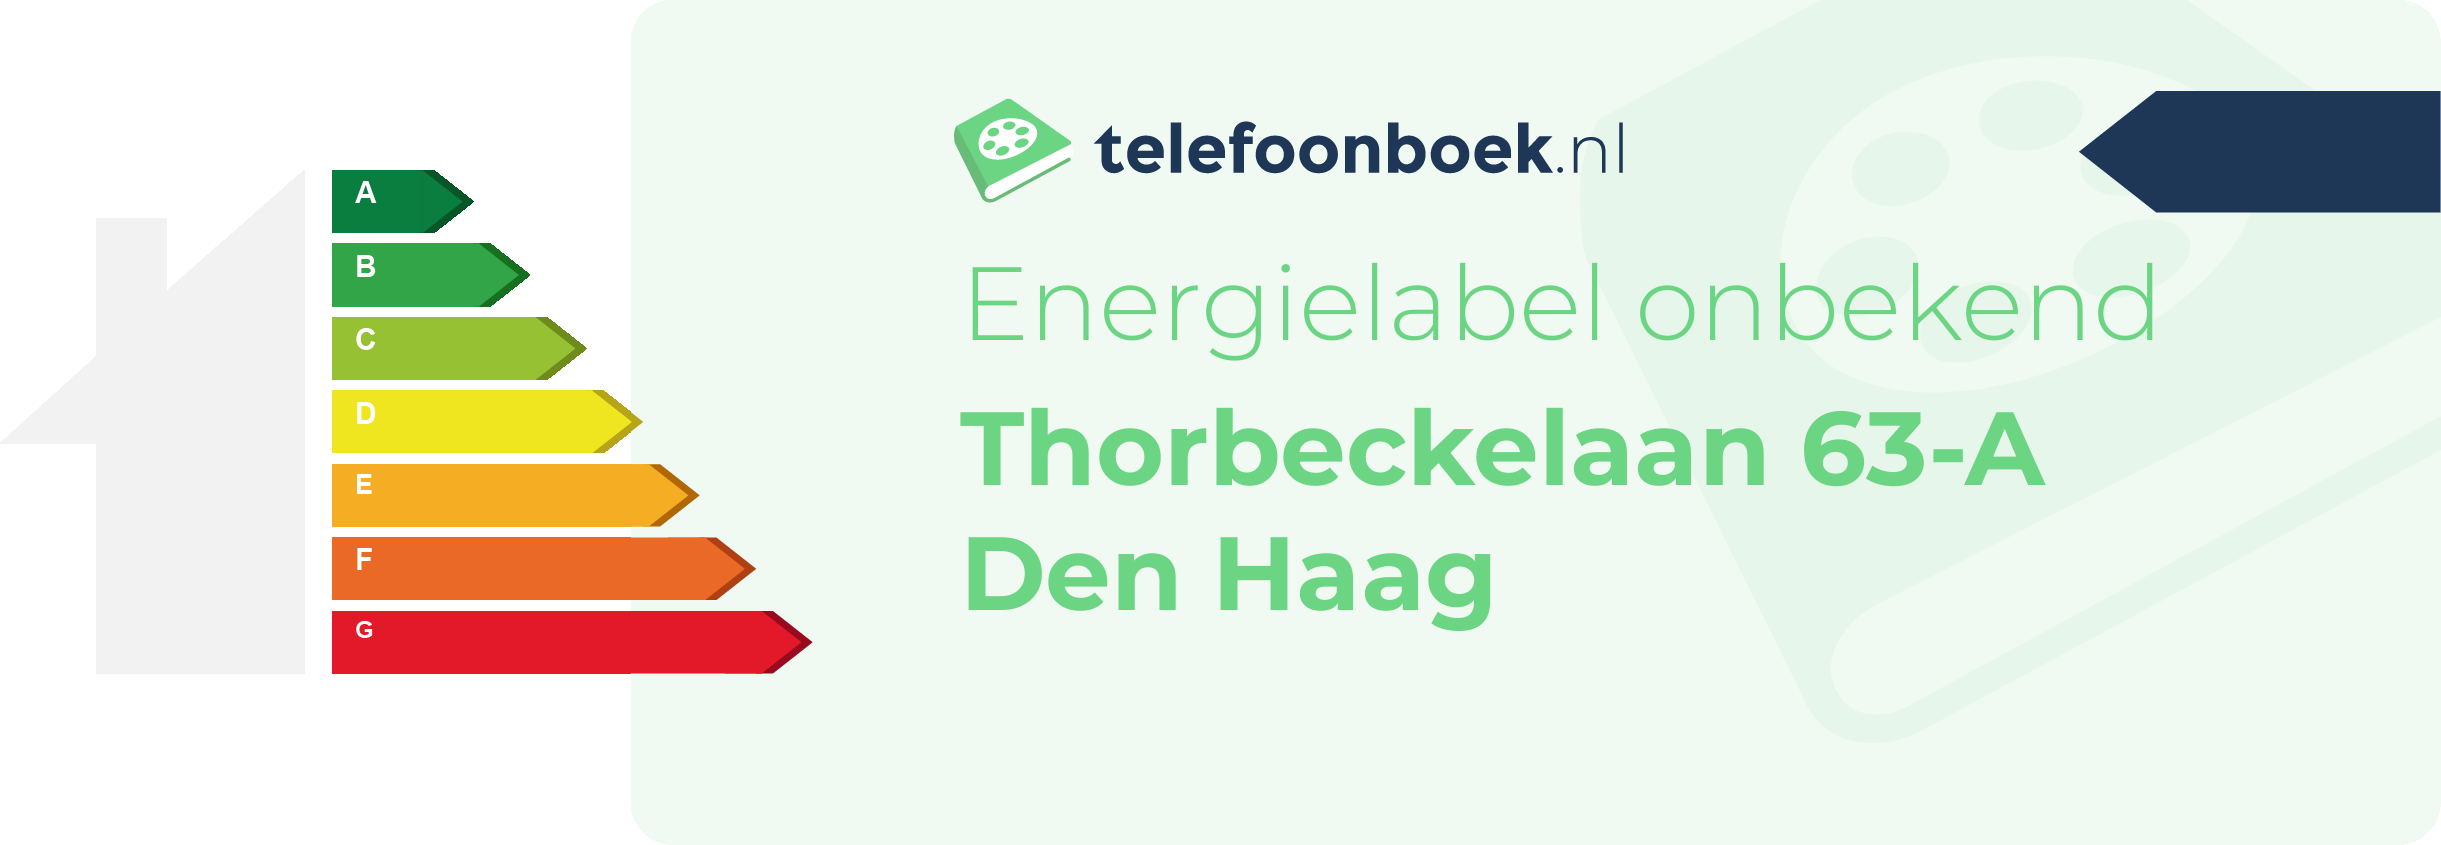 Energielabel Thorbeckelaan 63-A Den Haag